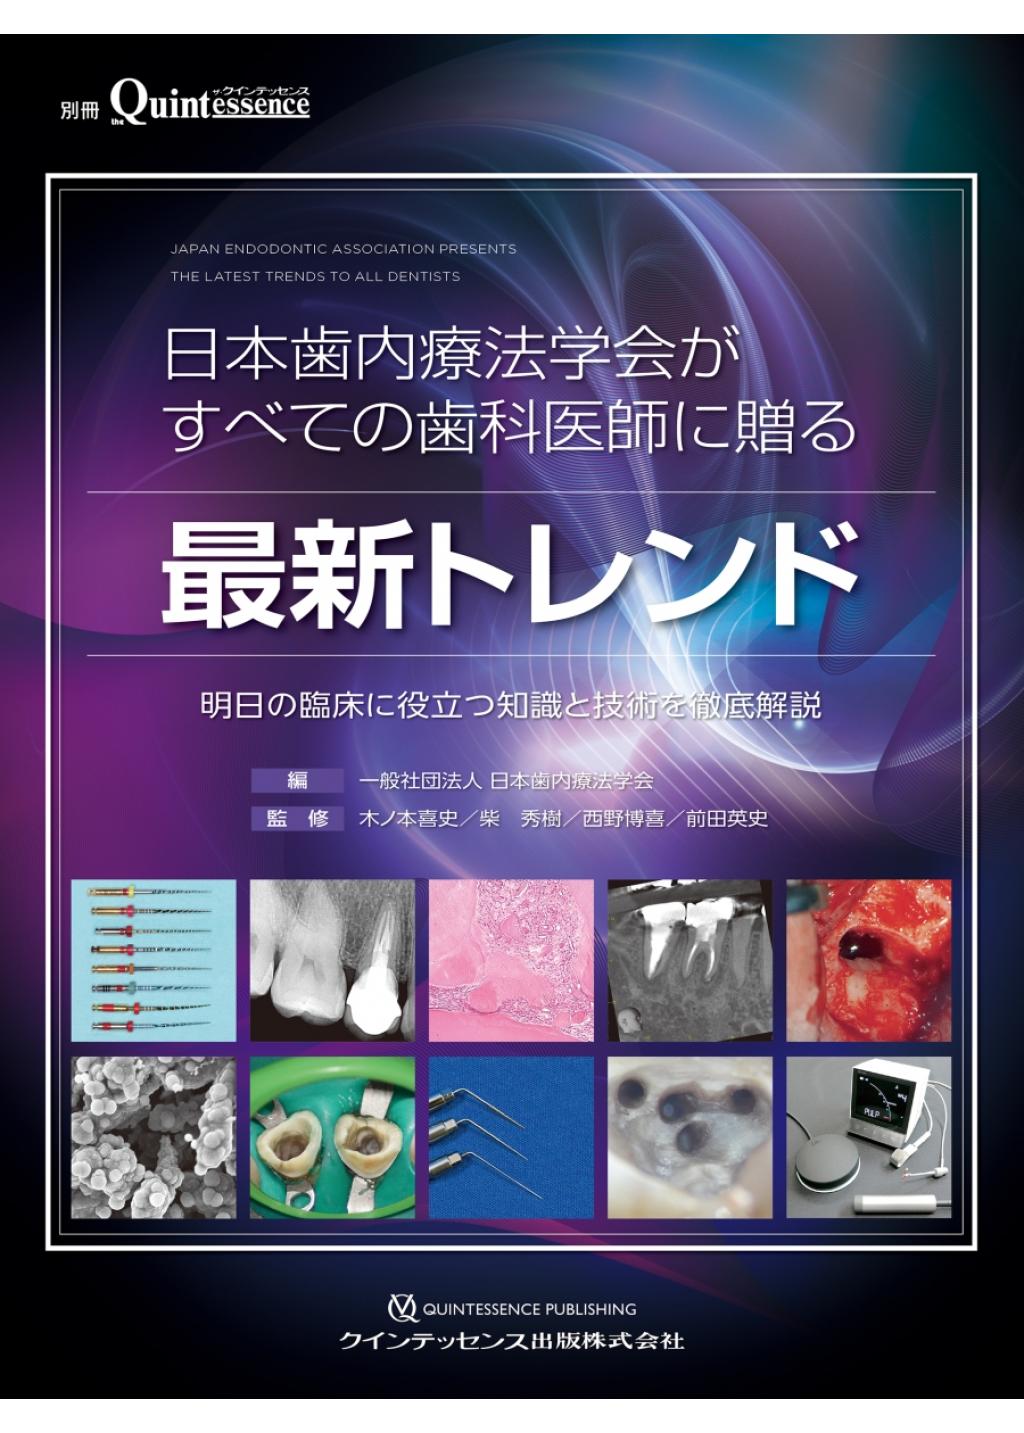 歯内療法 成功への道 抜髄 Initial Treatment: 治癒に導くための歯髄への臨床アプローチ (歯内療法成功への道)著者